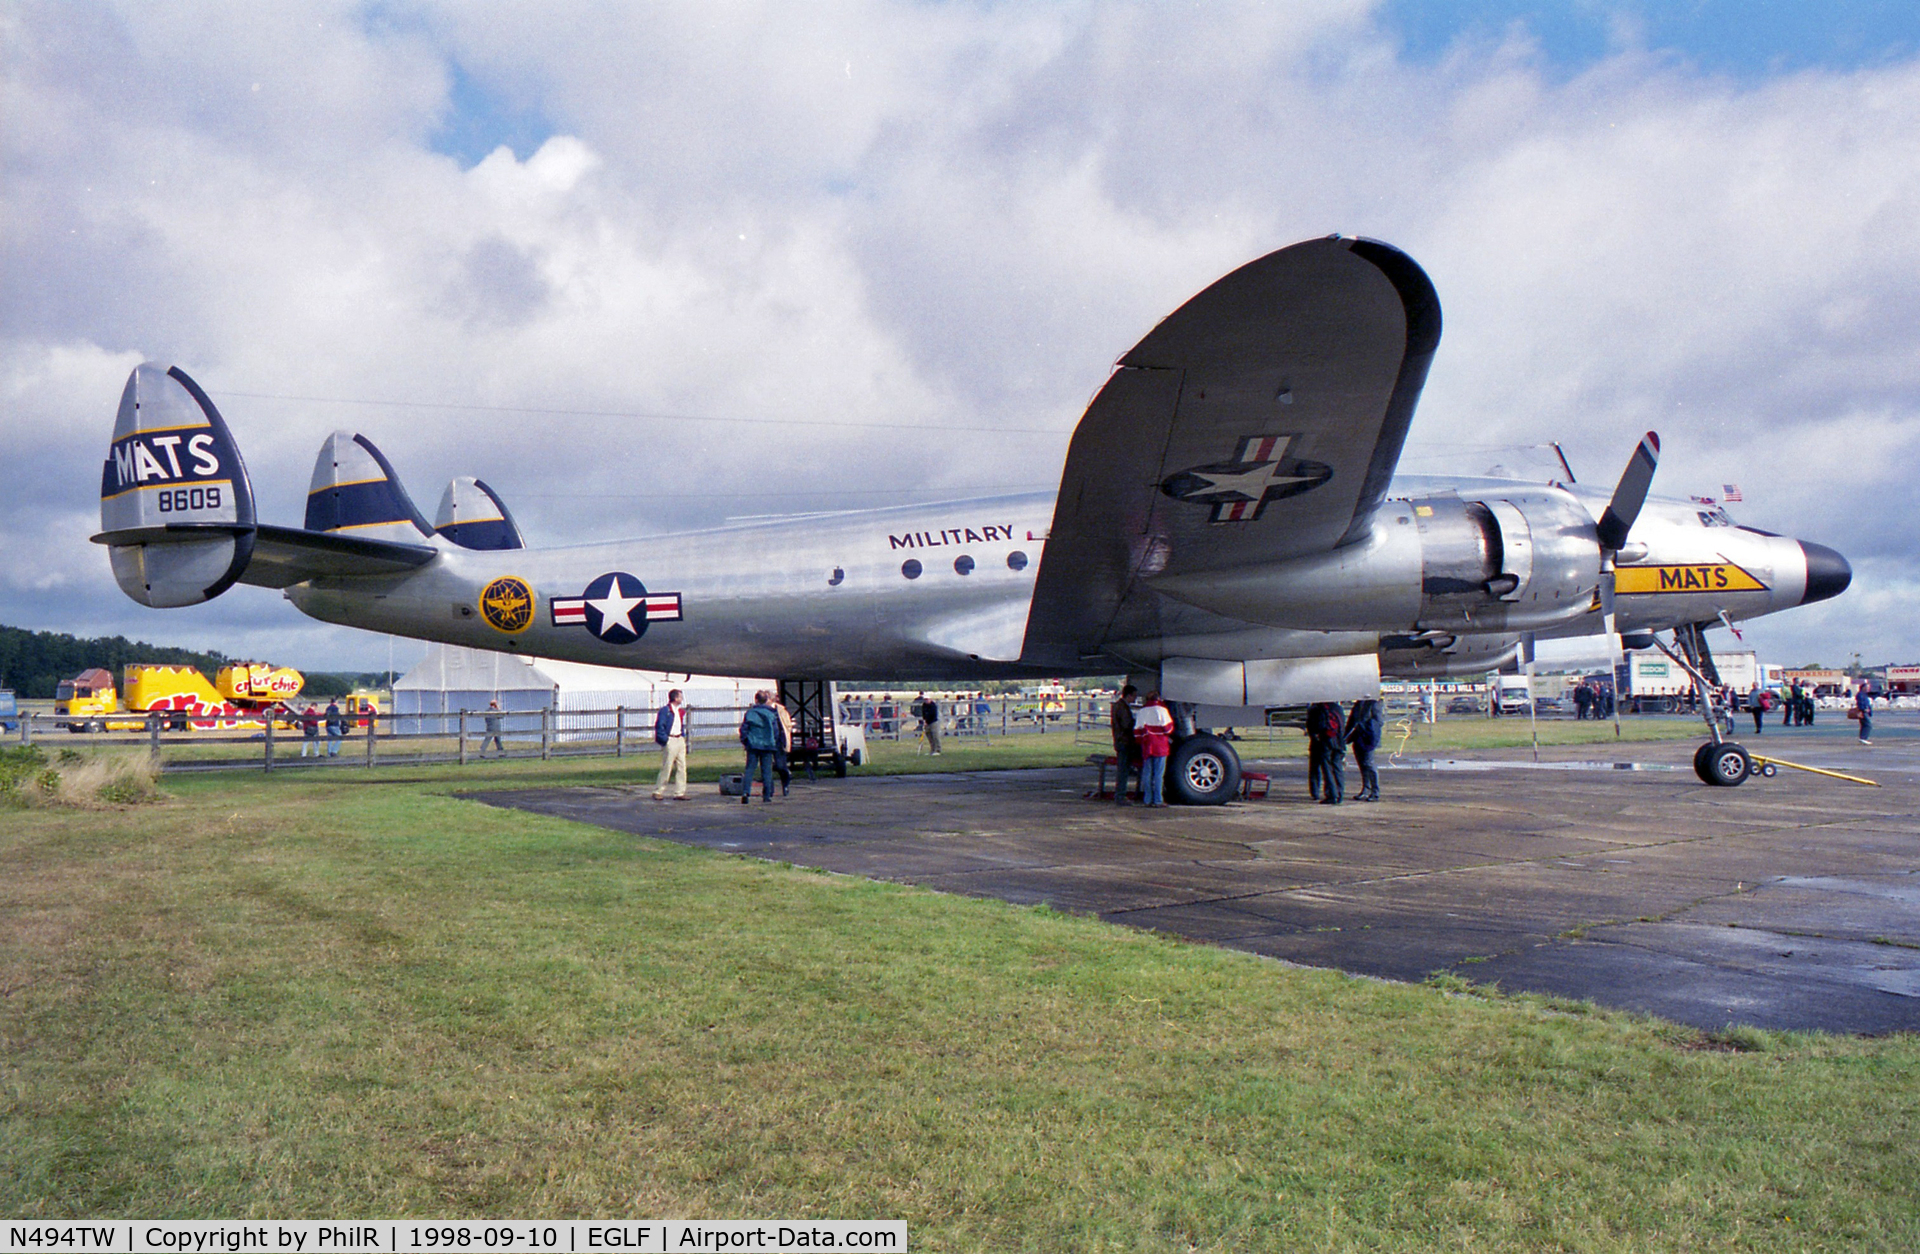 N494TW, 1948 Lockheed L-749A-79 Constellation C/N 2601, 1948 USAF MATS Lockheed C-121A Constellation 48-609 FIA